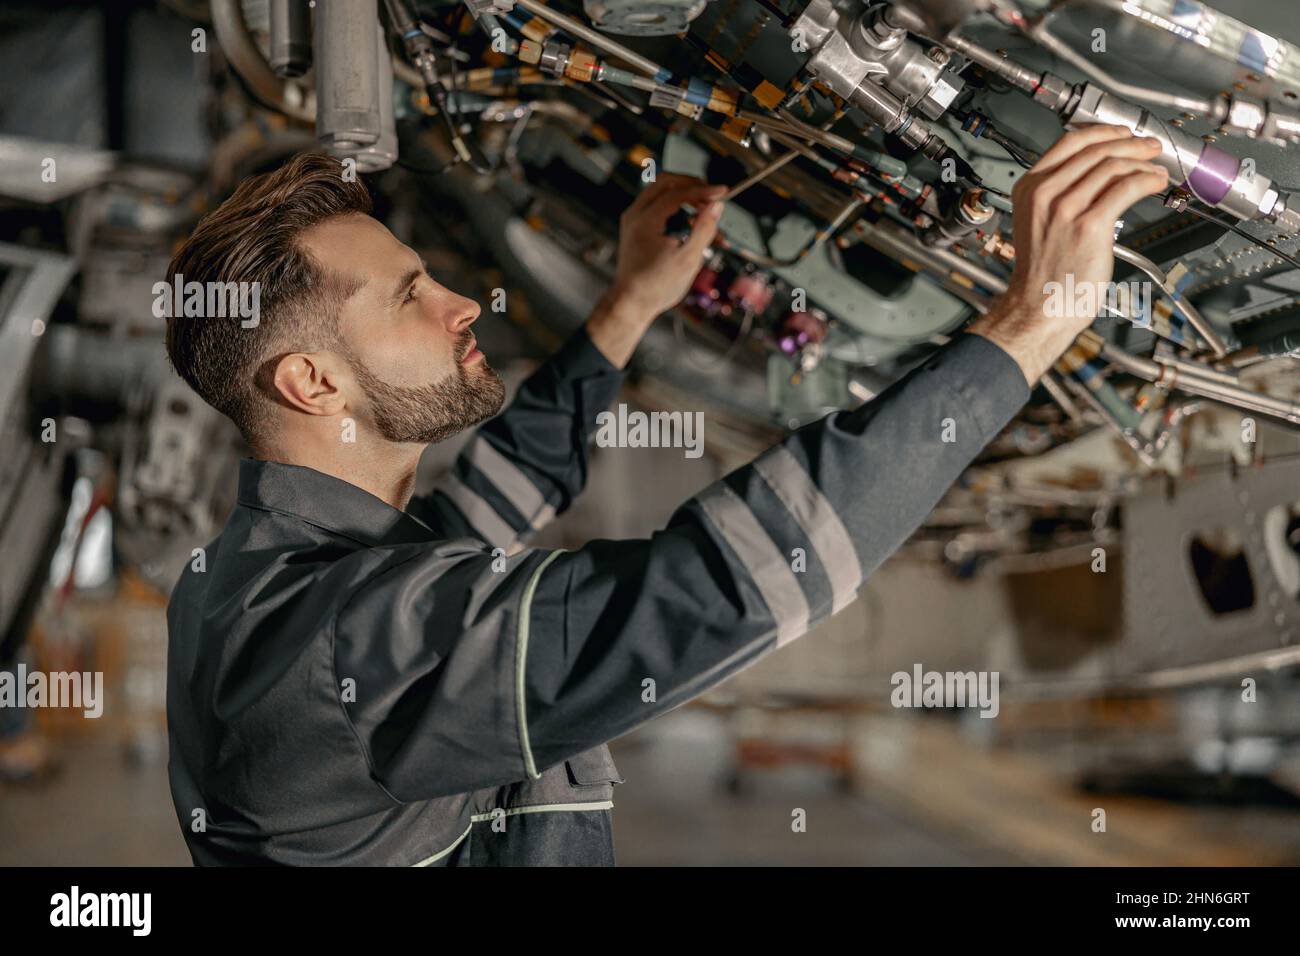 Male maintenance technician repairing airplane in hangar Stock Photo